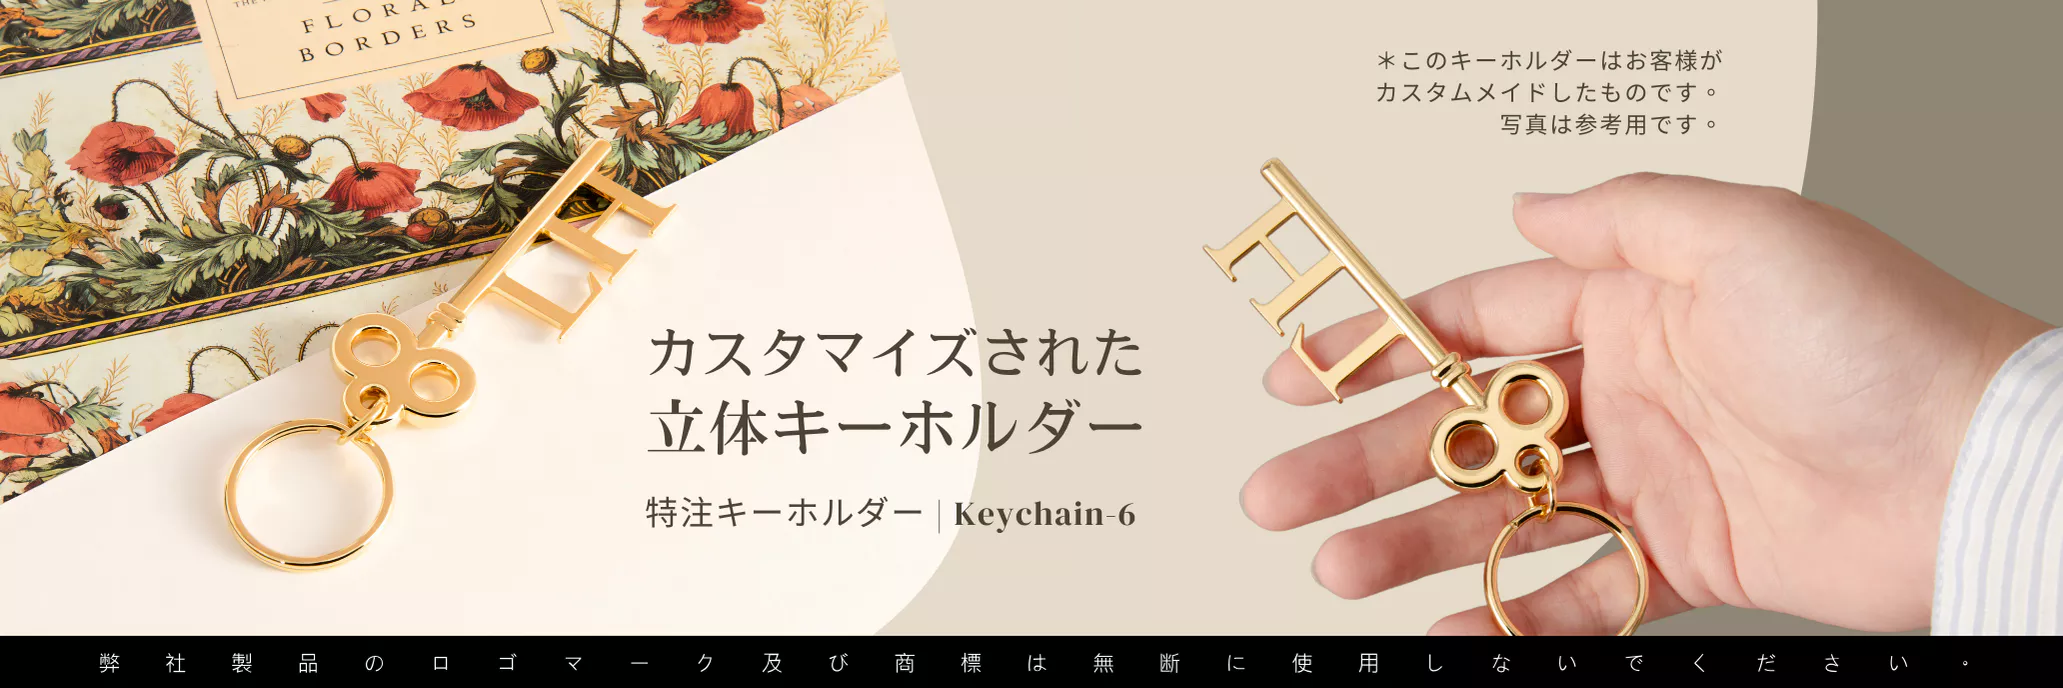 Keychain-6_金属鍵形キーチェーン_PC-jp